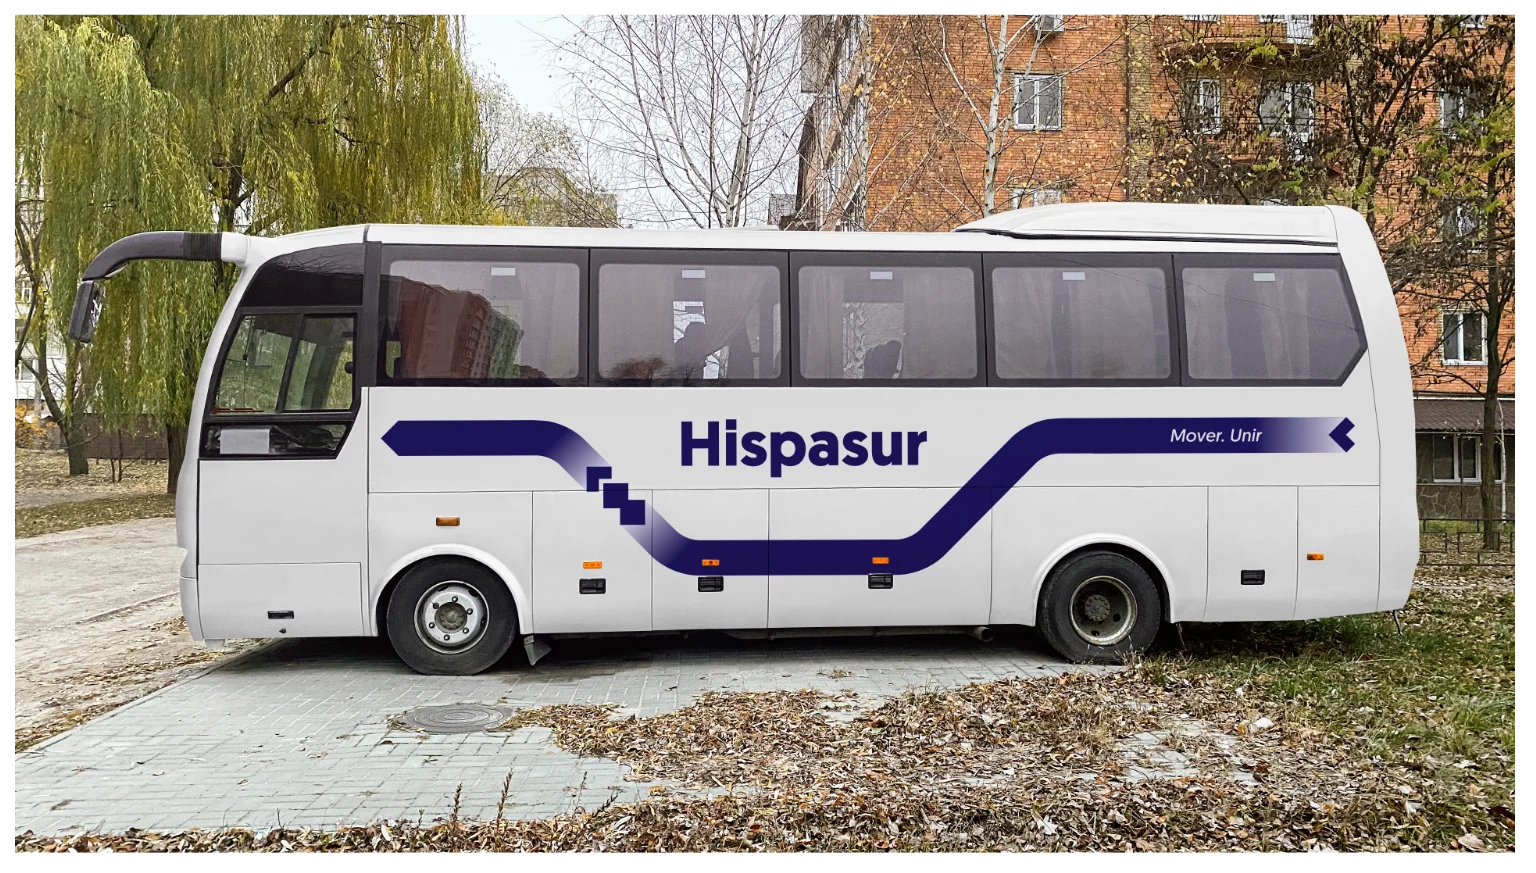 diseño del autocar de la marca hispasur en situación real